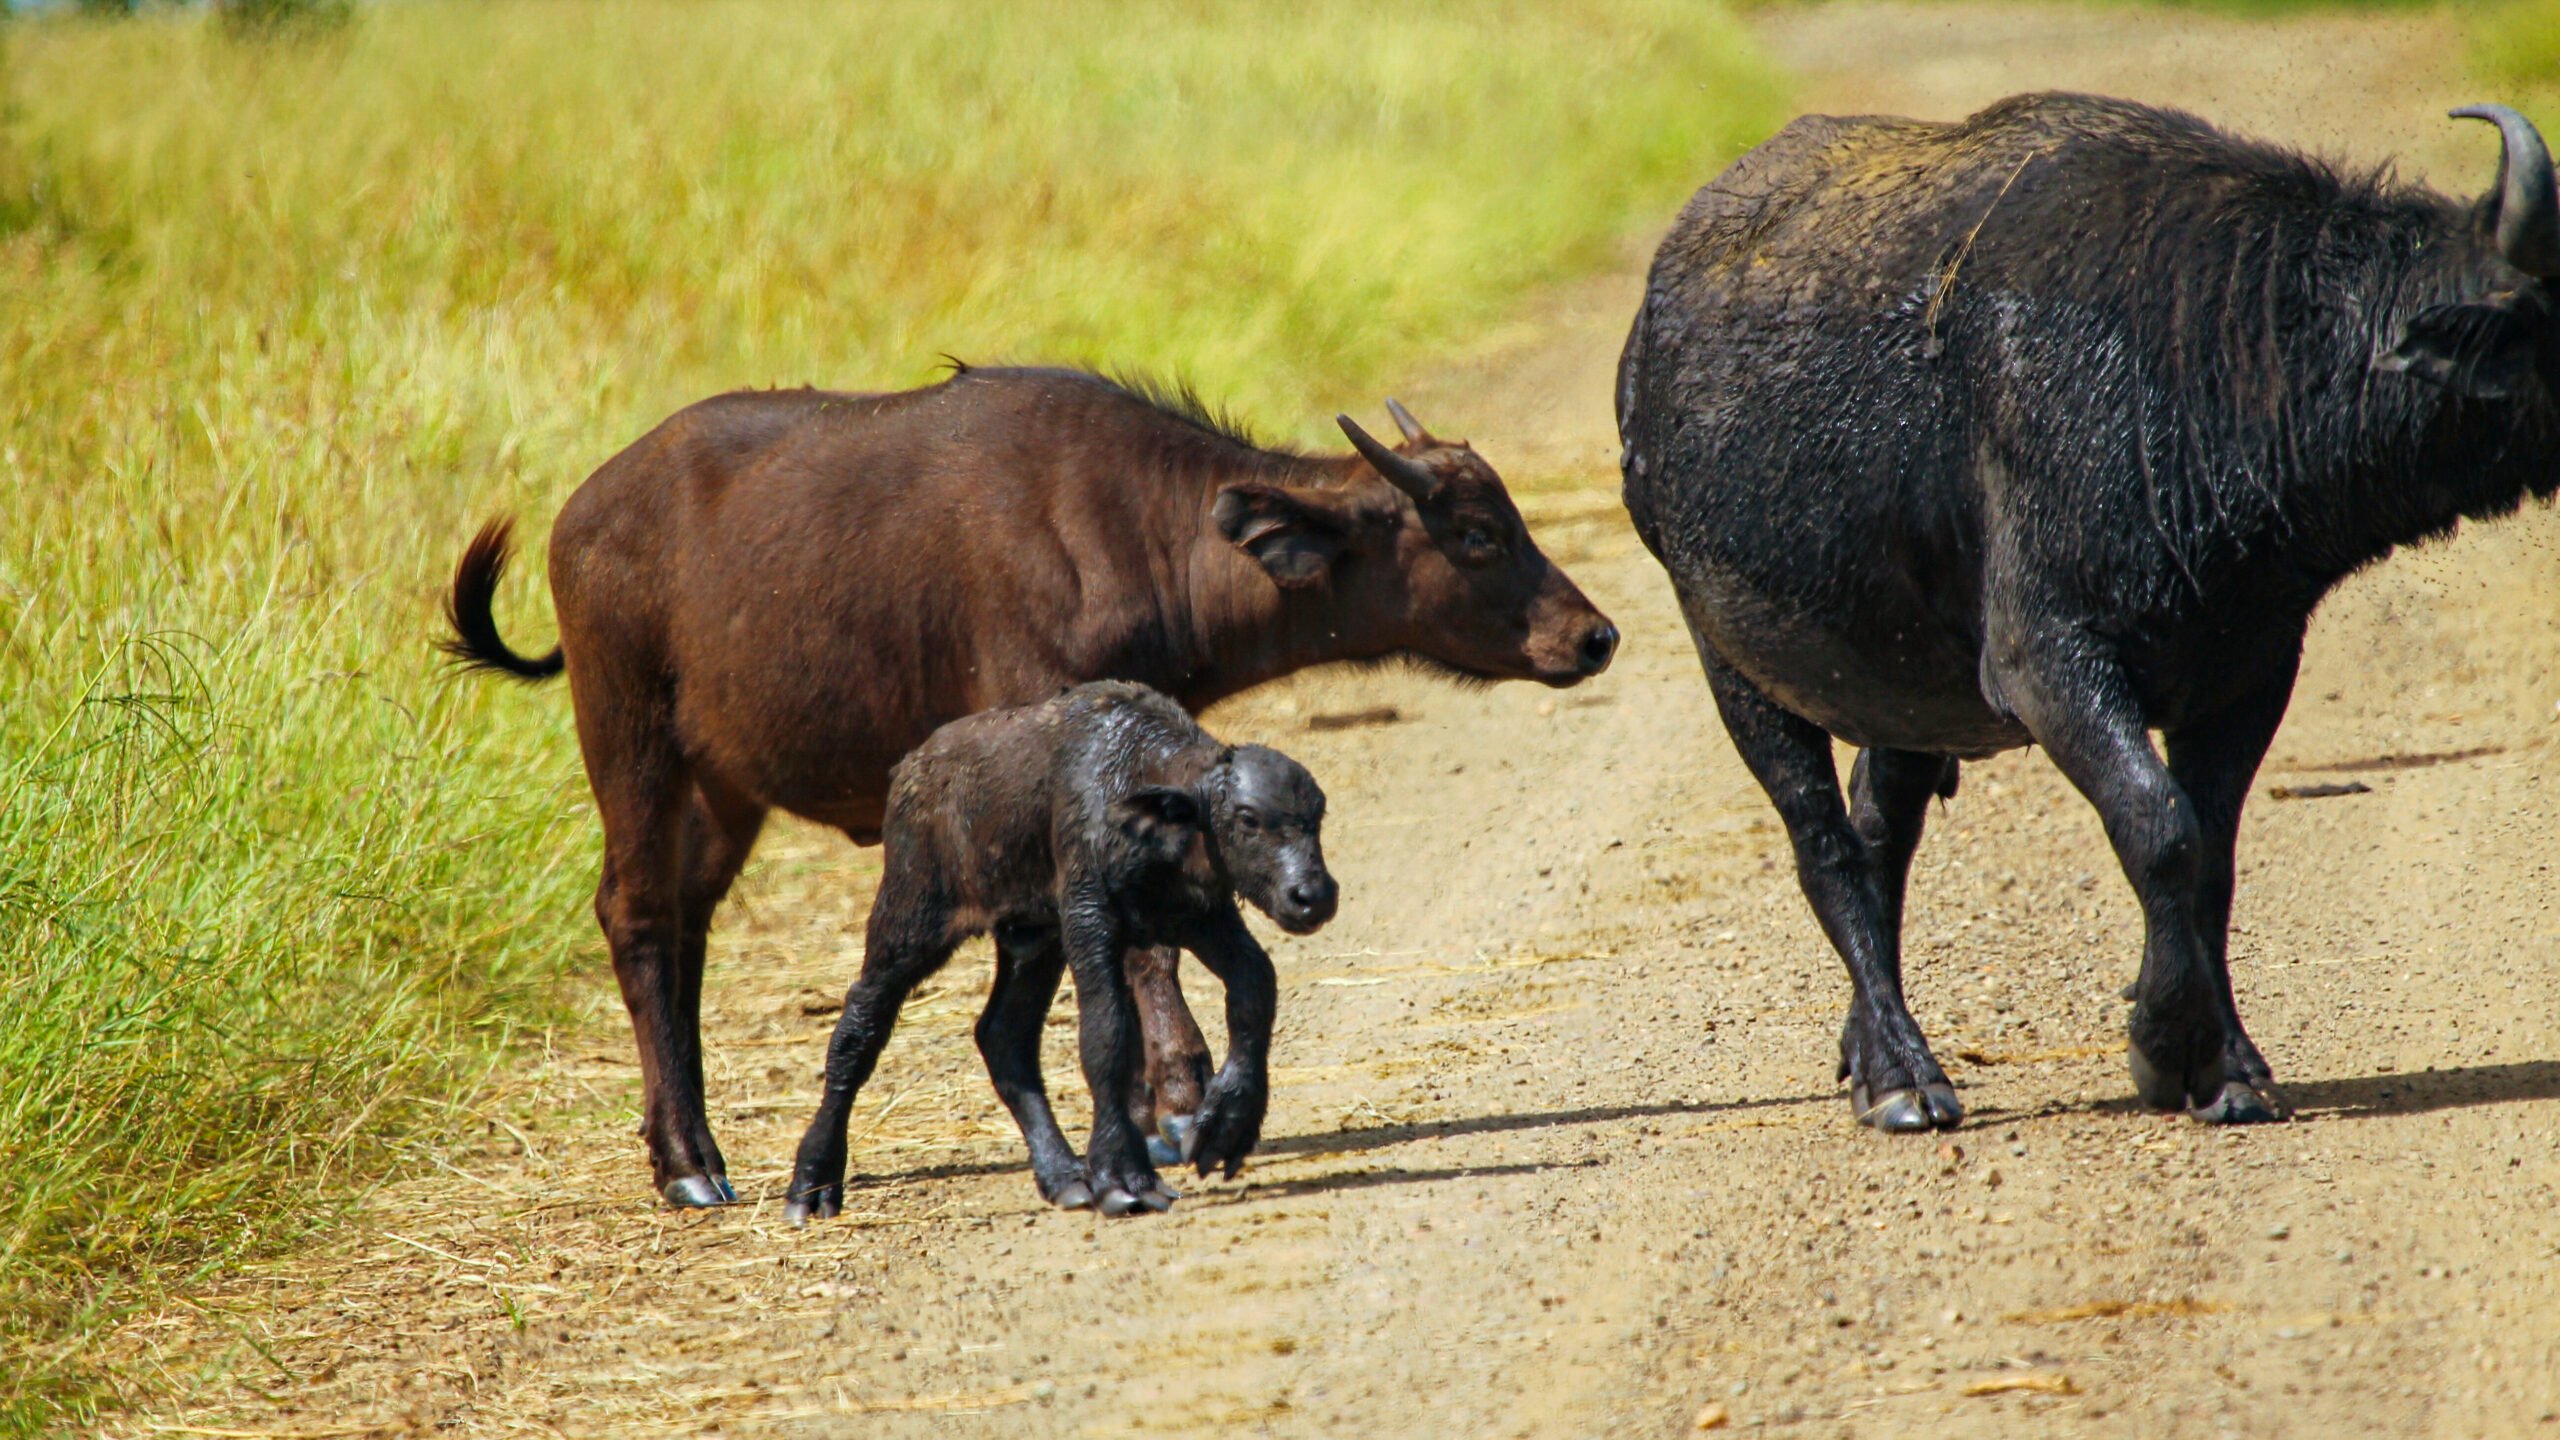 Buffalo calf born with bear-like claws 